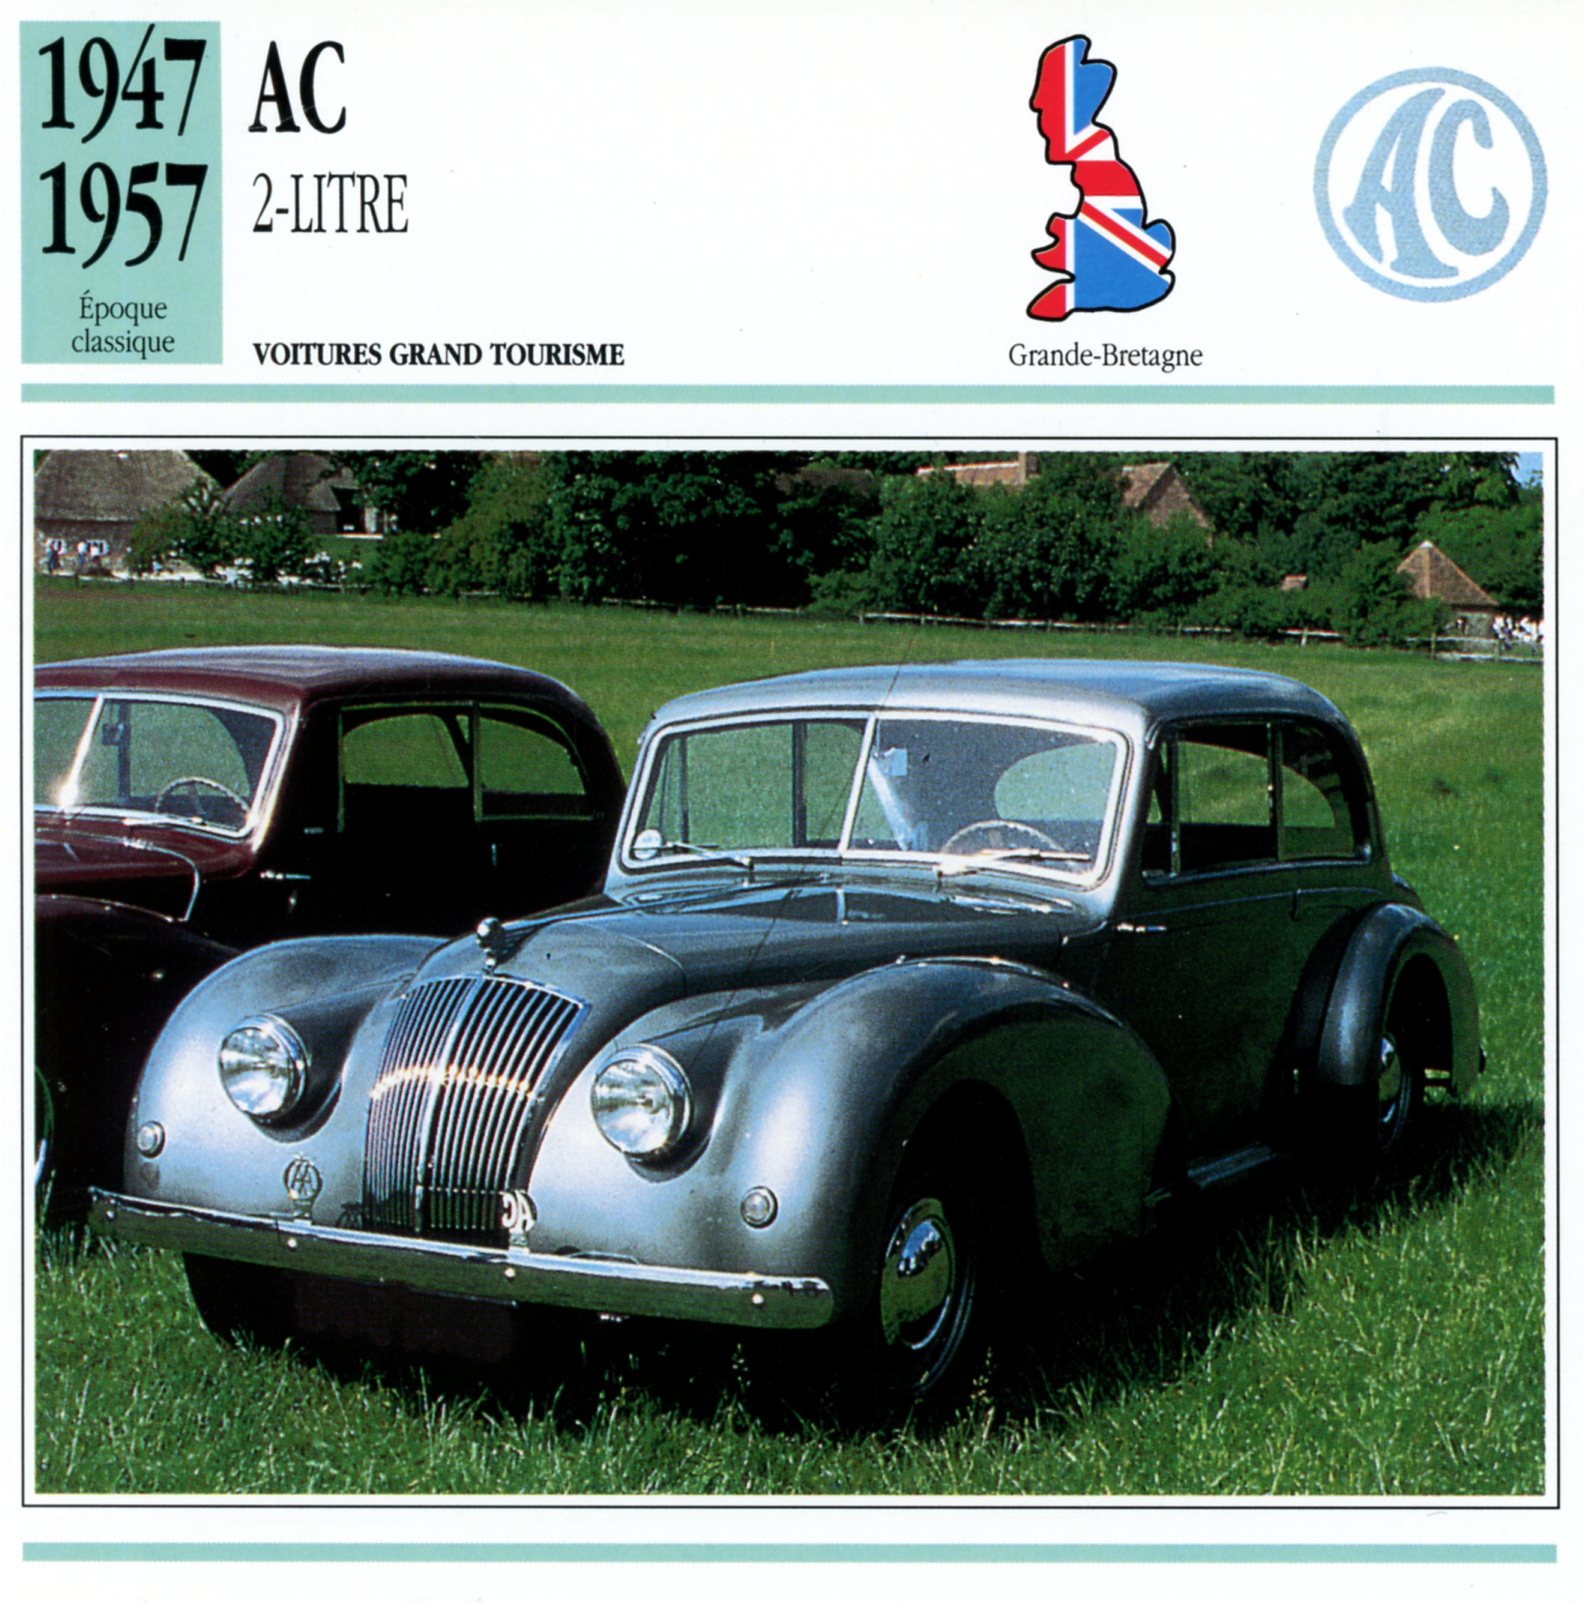 FICHE-AUTO-CARACTÉRISTIQUES-AC-1947-1957-LEMASTERBROCKERS-CARS-CARD